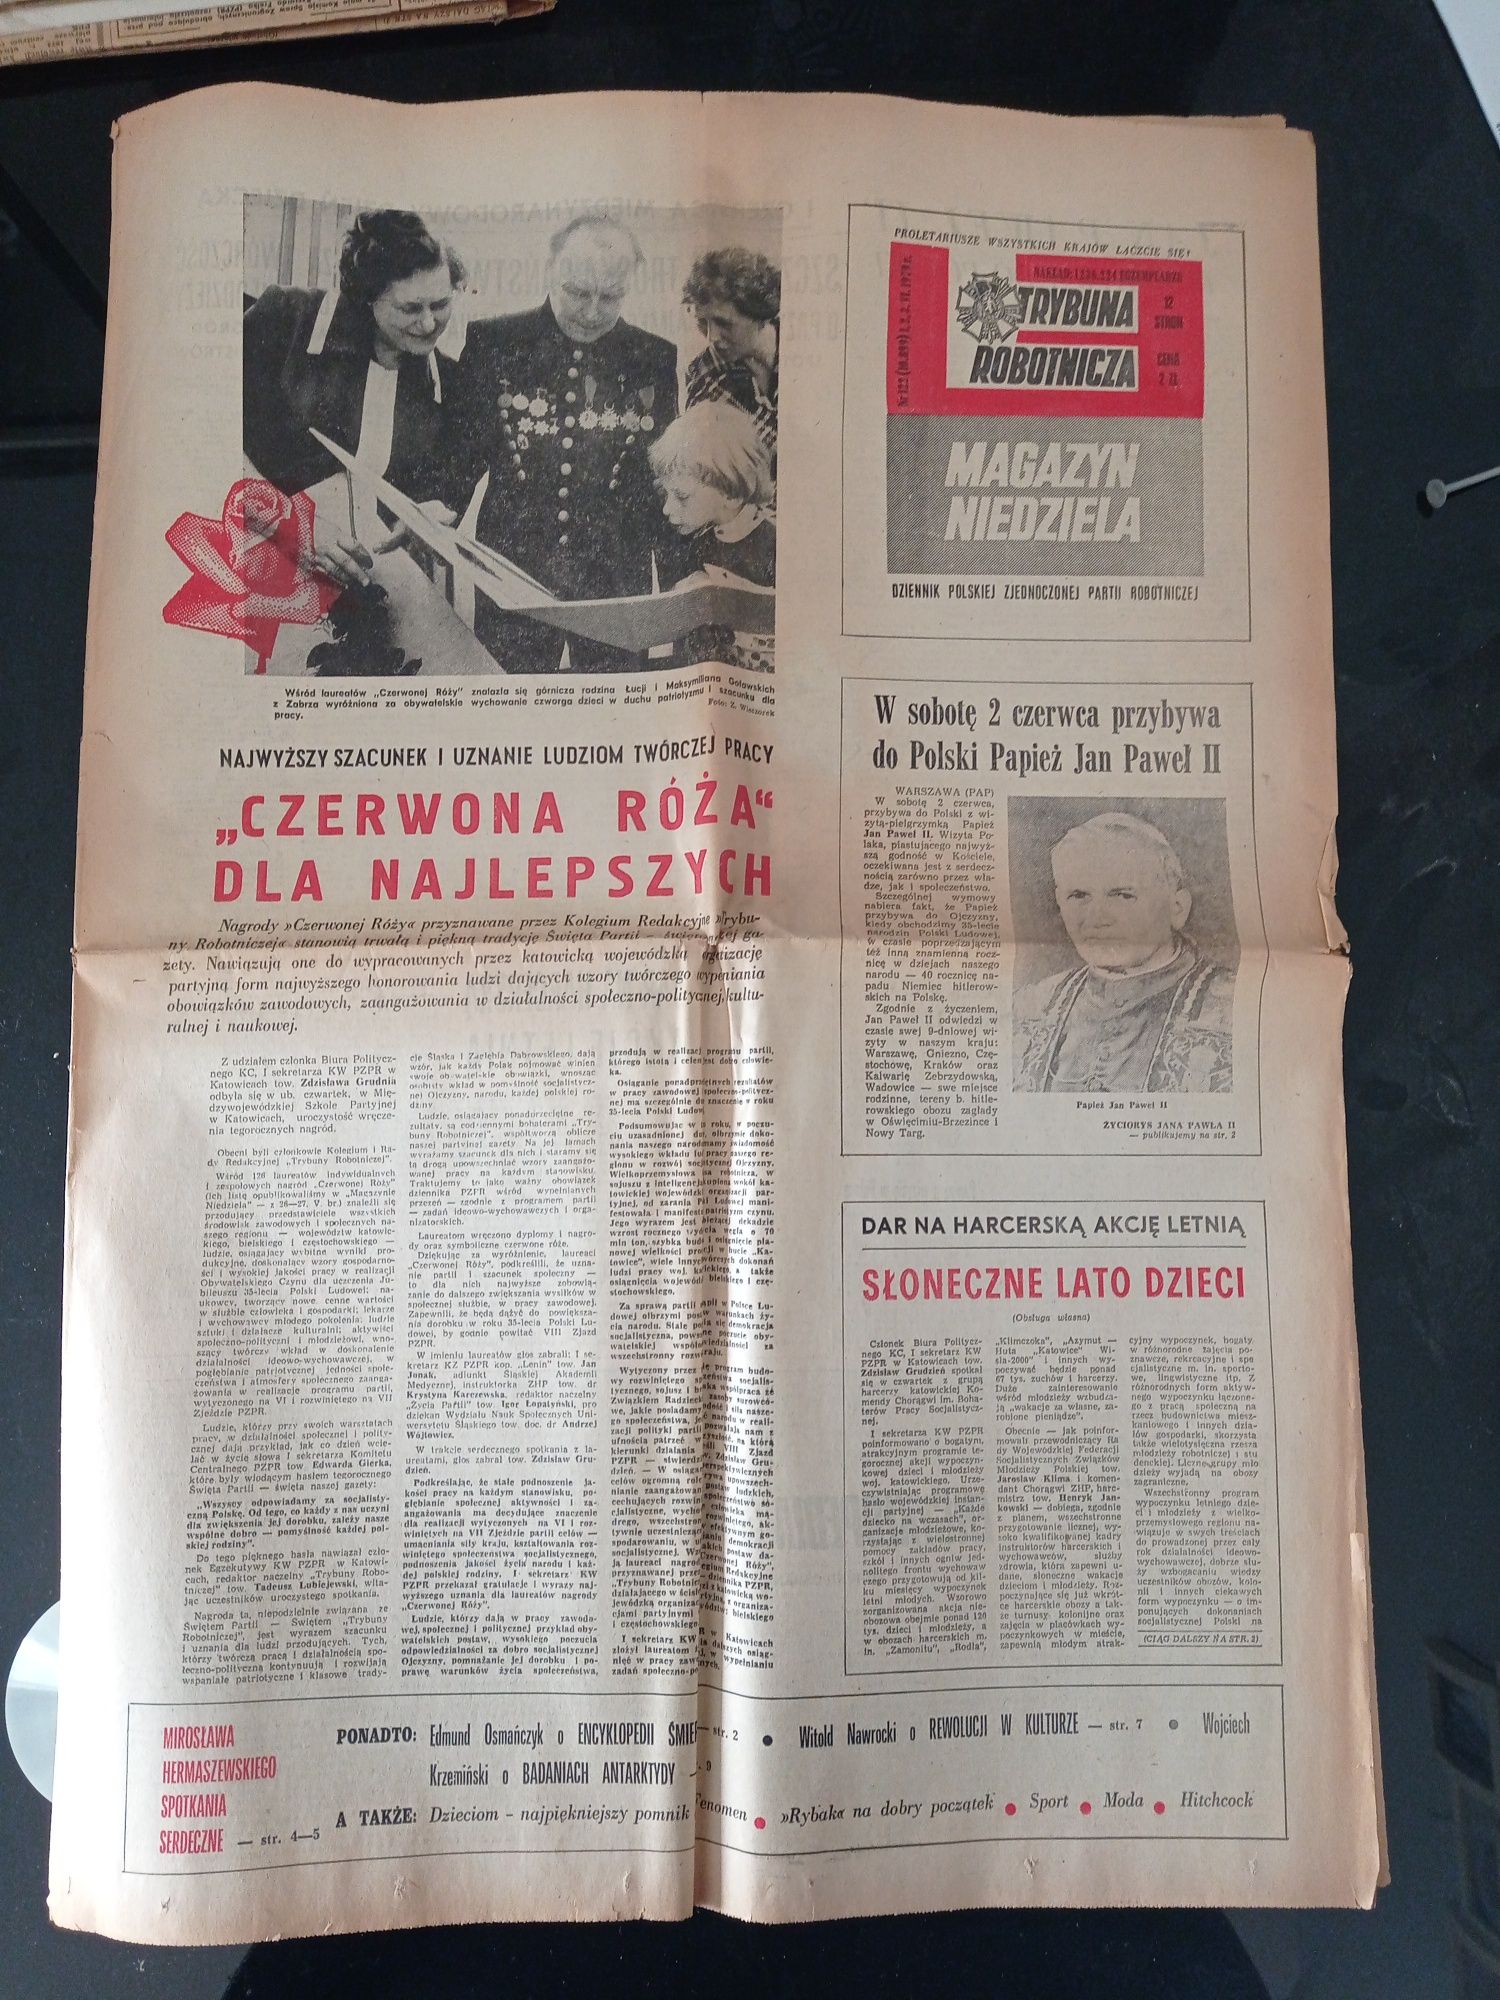 Trybuna Robotnicza Magazyn Niedziela 1979